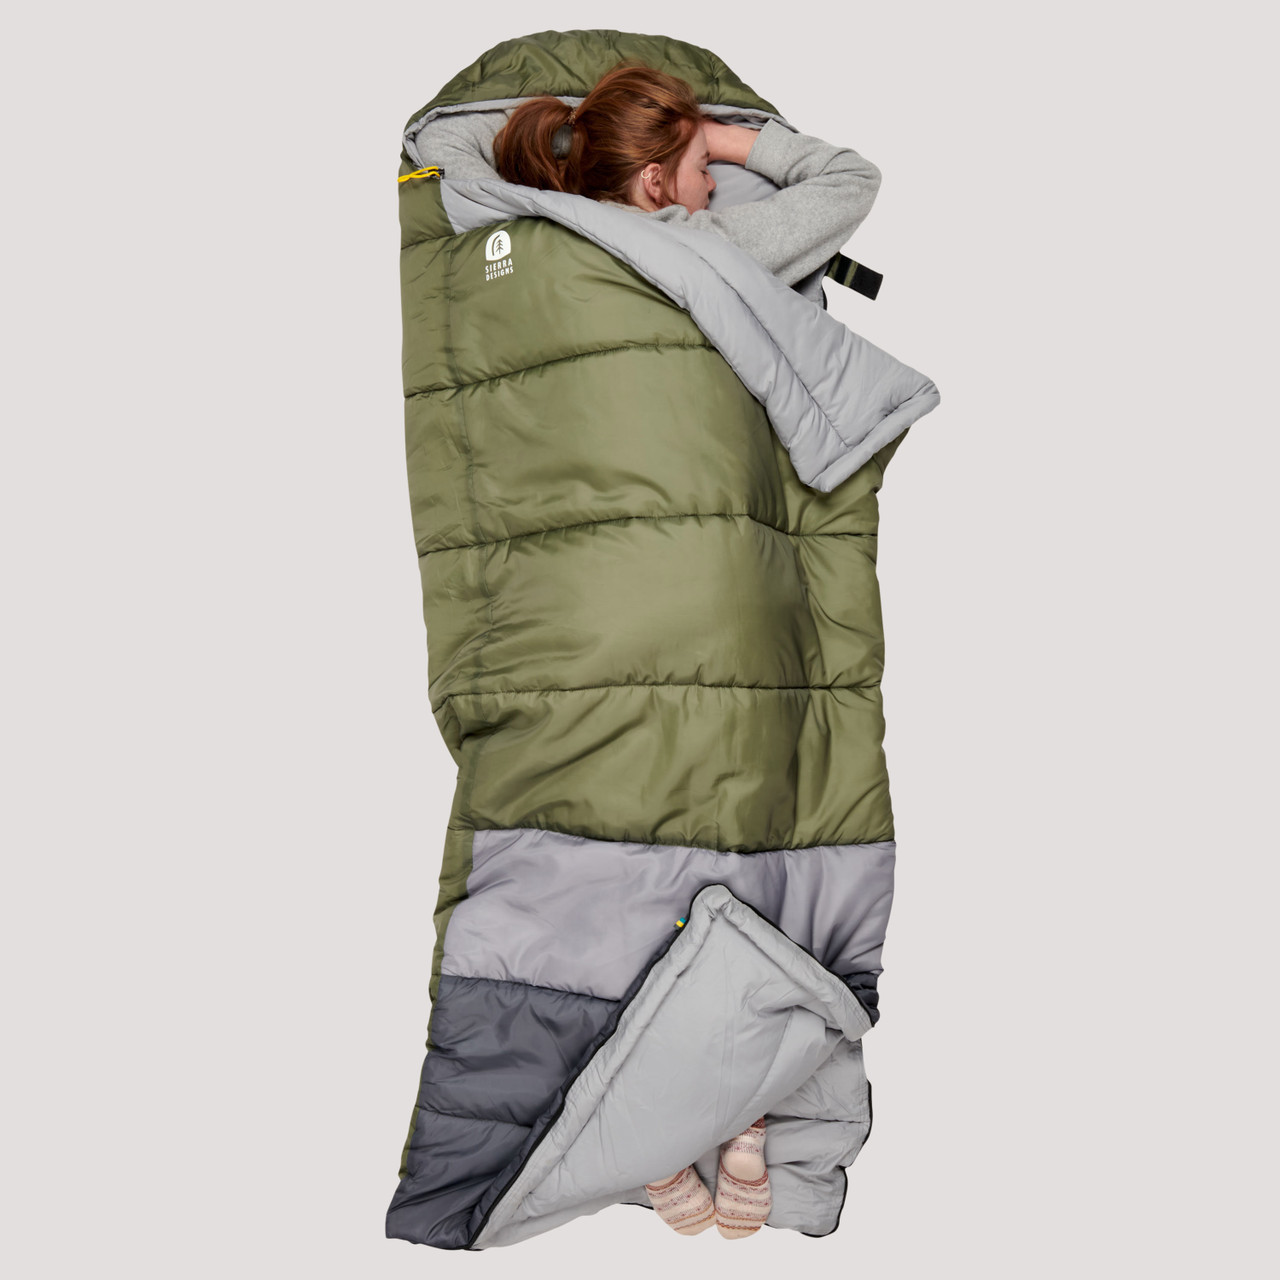 Sierra Designs Youth Pika 40° Sleeping Bag